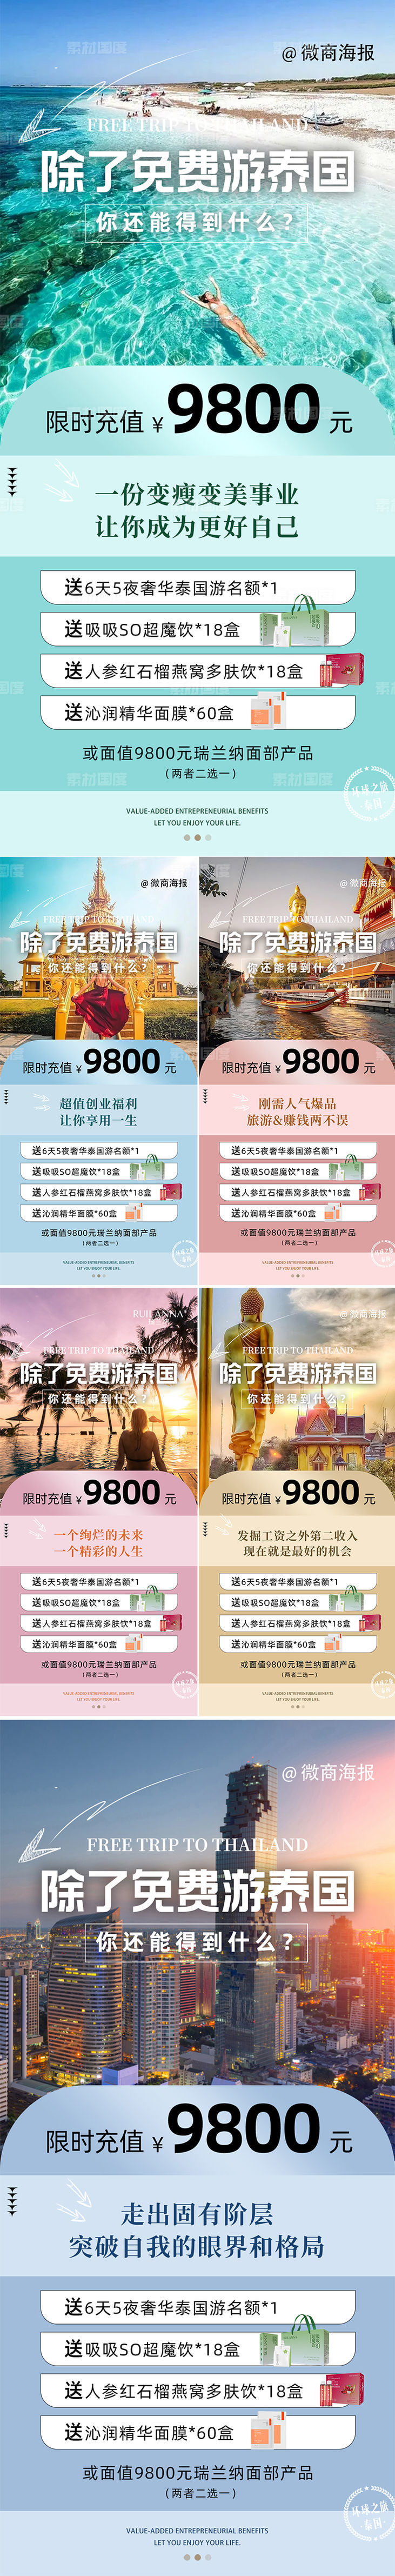 微商招商政策旅游海报